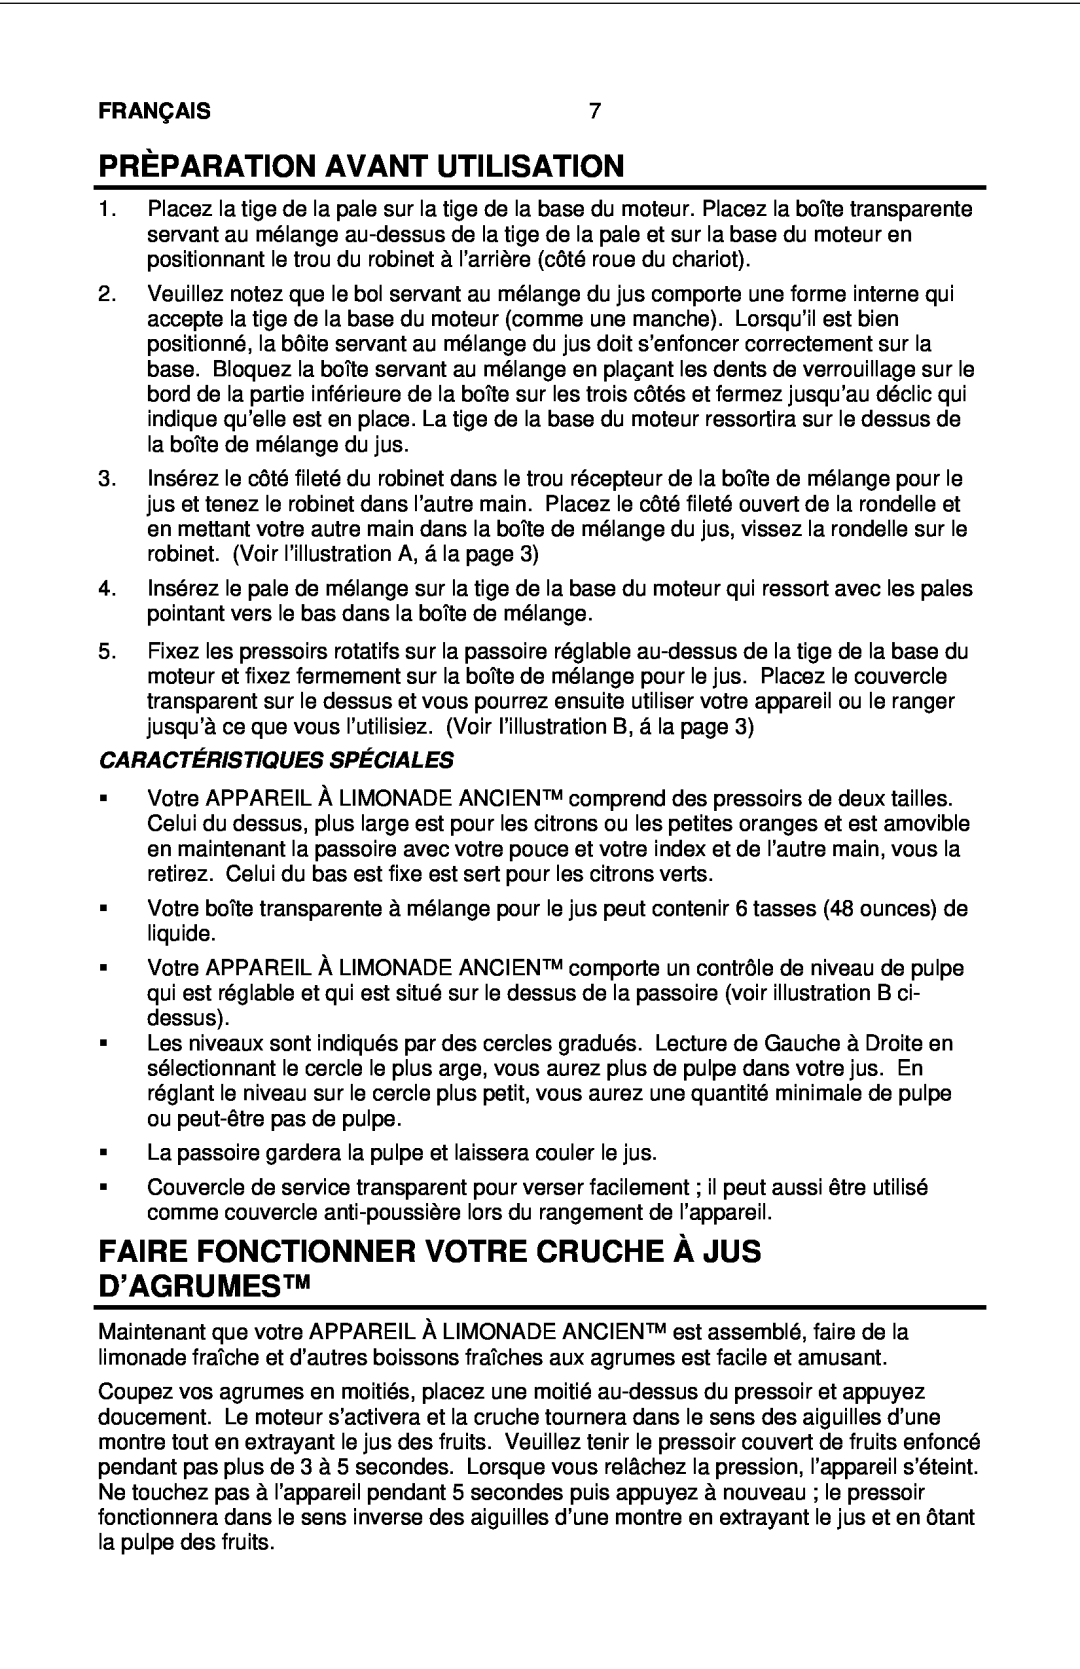 Nostalgia Electrics LJS - 502 manual Faire Fonctionner Votre Cruche À Jus D’Agrumes, Caractéristiques Spéciales, Français 